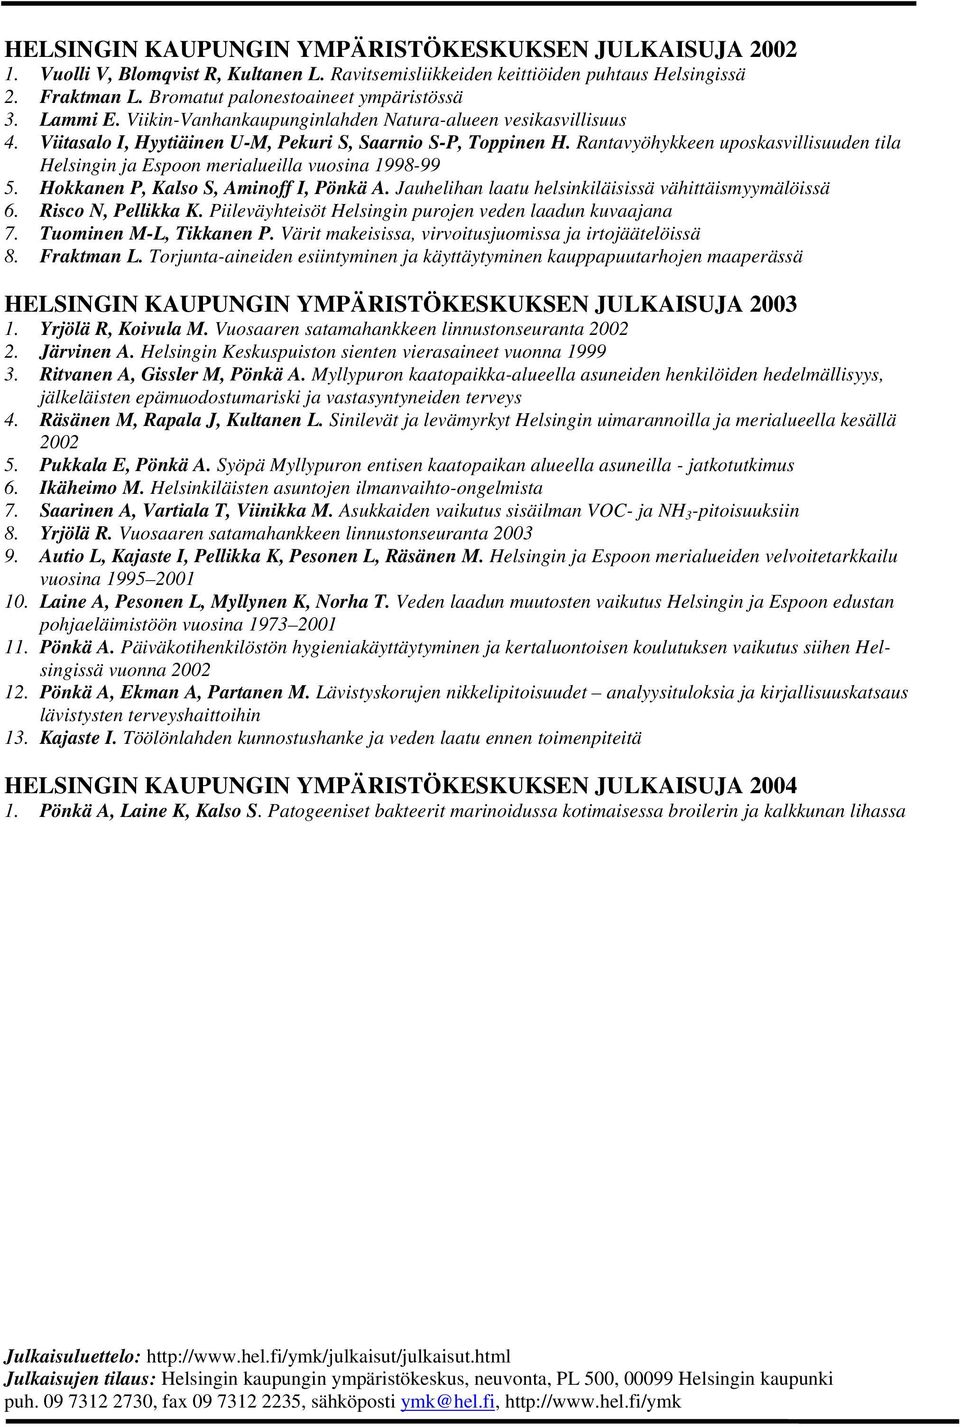 Rantavyöhykkeen uposkasvillisuuden tila Helsingin ja Espoon merialueilla vuosina 1998-99 5. Hokkanen P, Kalso S, Aminoff I, Pönkä A. Jauhelihan laatu helsinkiläisissä vähittäismyymälöissä 6.